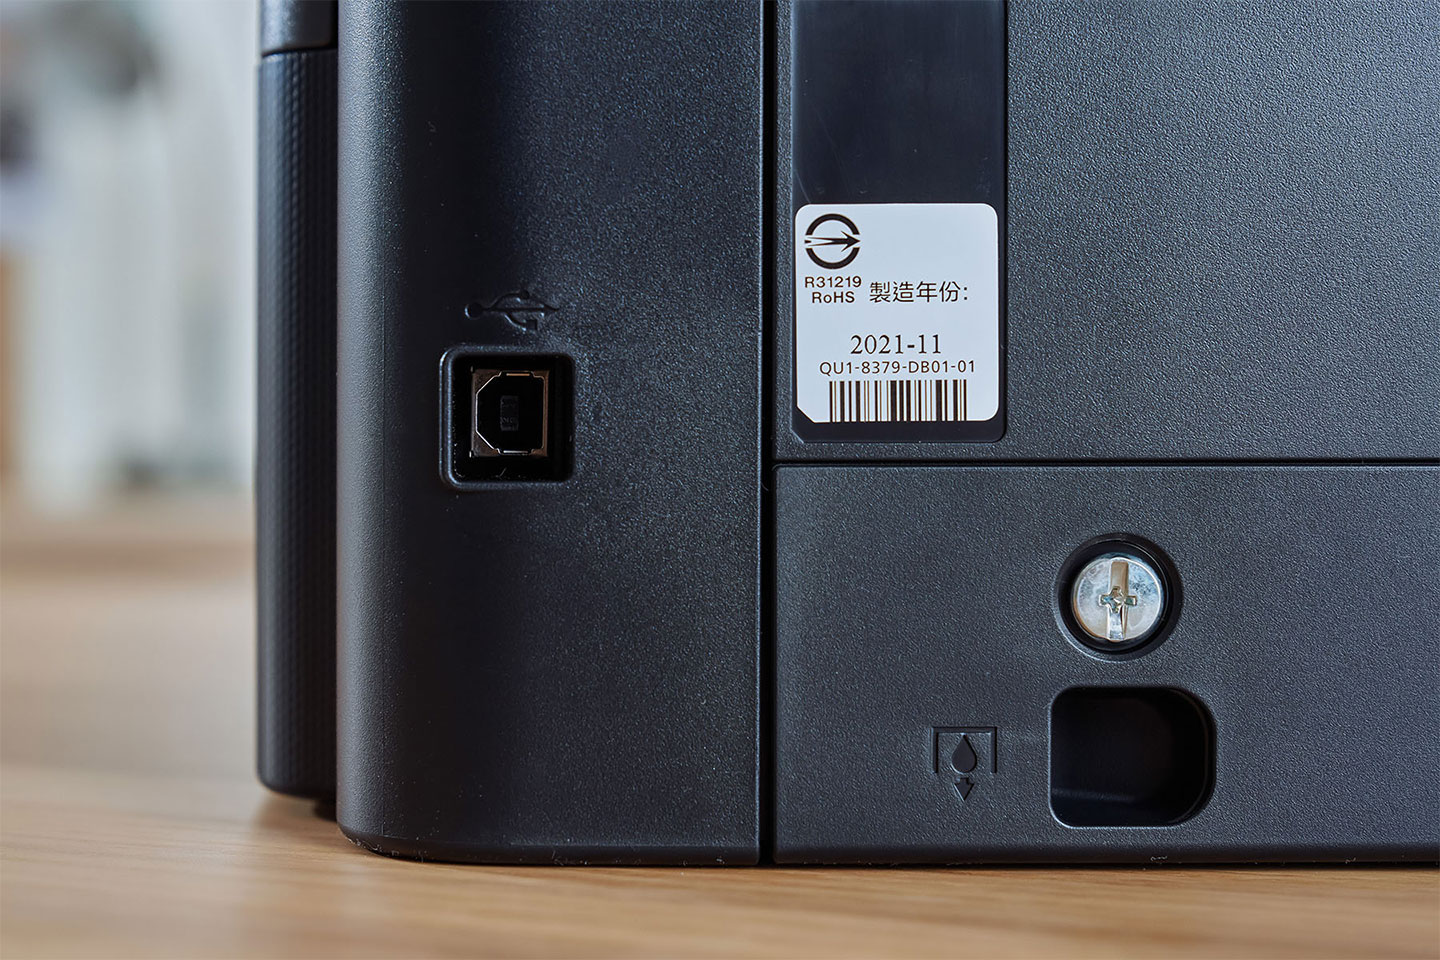 機身後側左方有直連電腦的 USB 接口，以及墨匣（廢墨棉）的開啟螺絲 ▲ 機身後方右側有一個 8 電源接口。 ▲ 墨匣取出的樣，Canon PIXMA G3020 也是少數提供 DIY 替換廢墨棉的印表機。